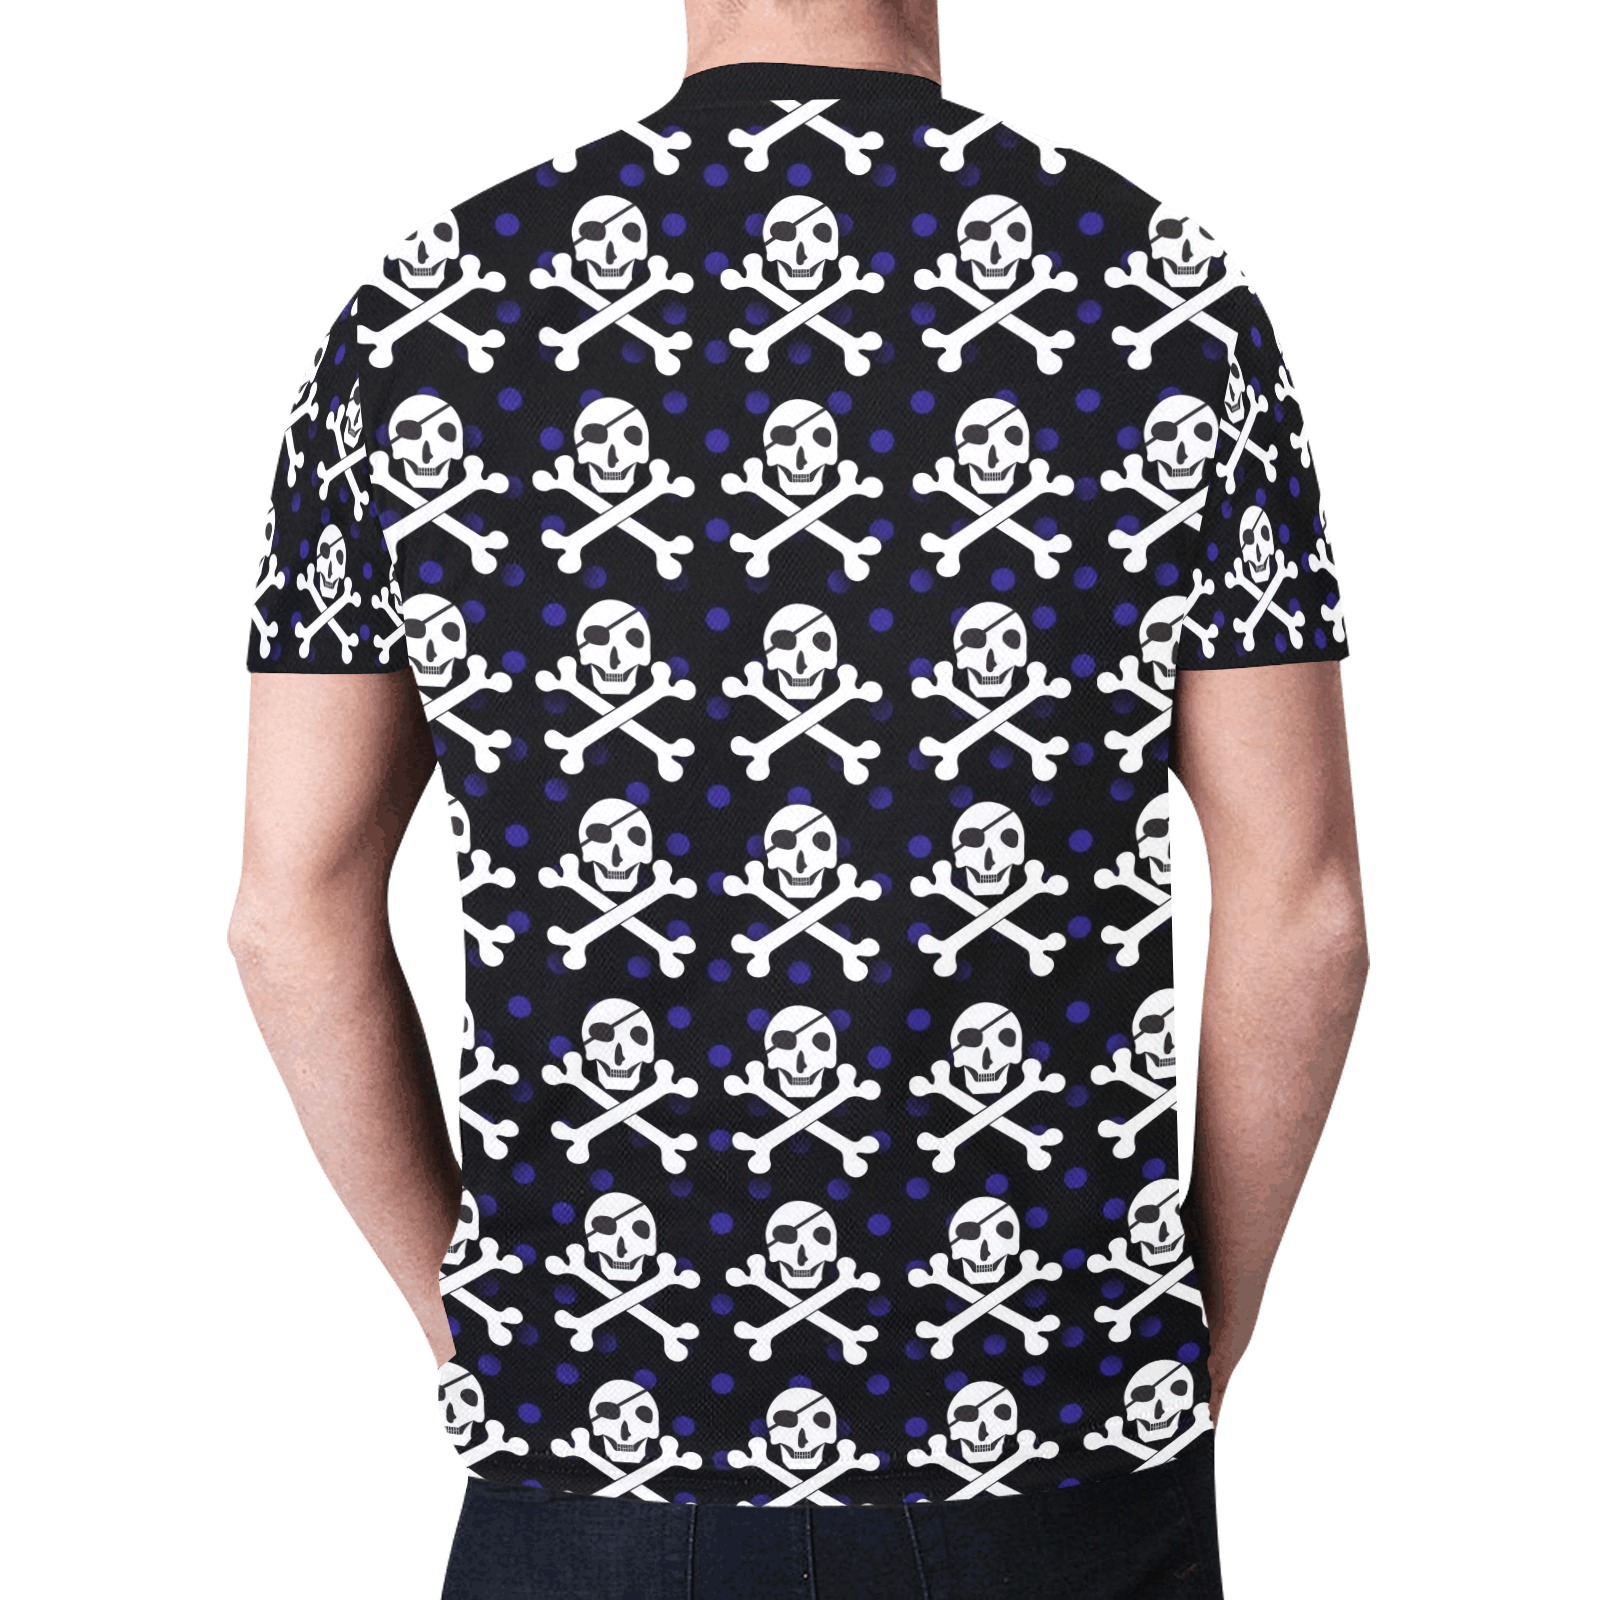 Skull and Crossbones New All Over Print T-shirt for Men (Model T45)